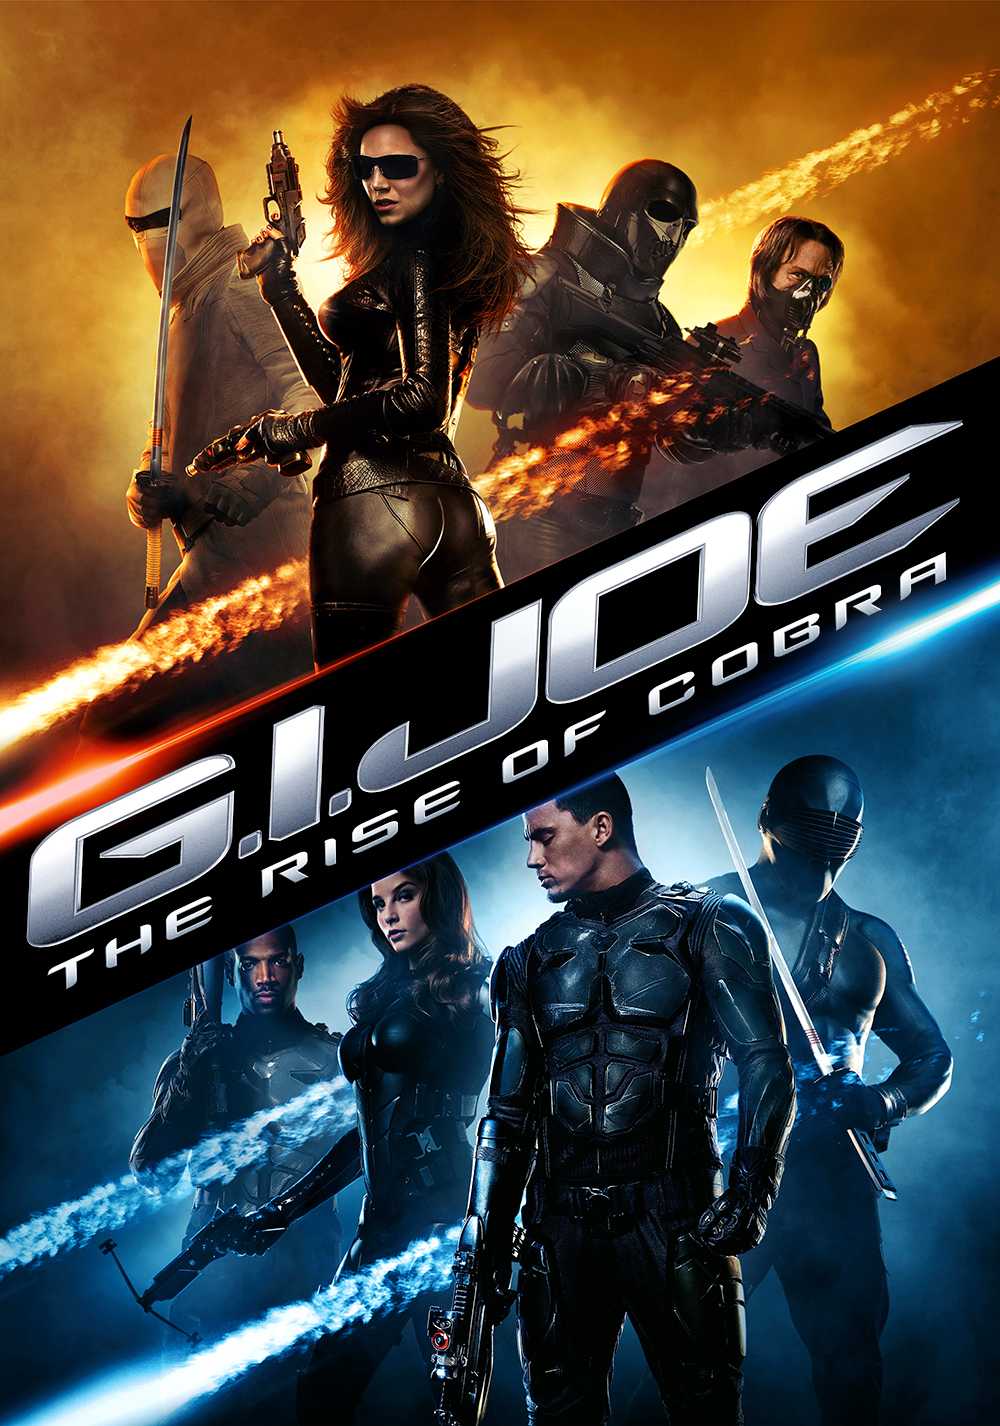 Джей джей бросок кобры. G.I. Joe: the Rise of Cobra 2009 Постер. G.I. Joe: бросок кобры 1. G I Joe бросок кобры 2009 Постер.